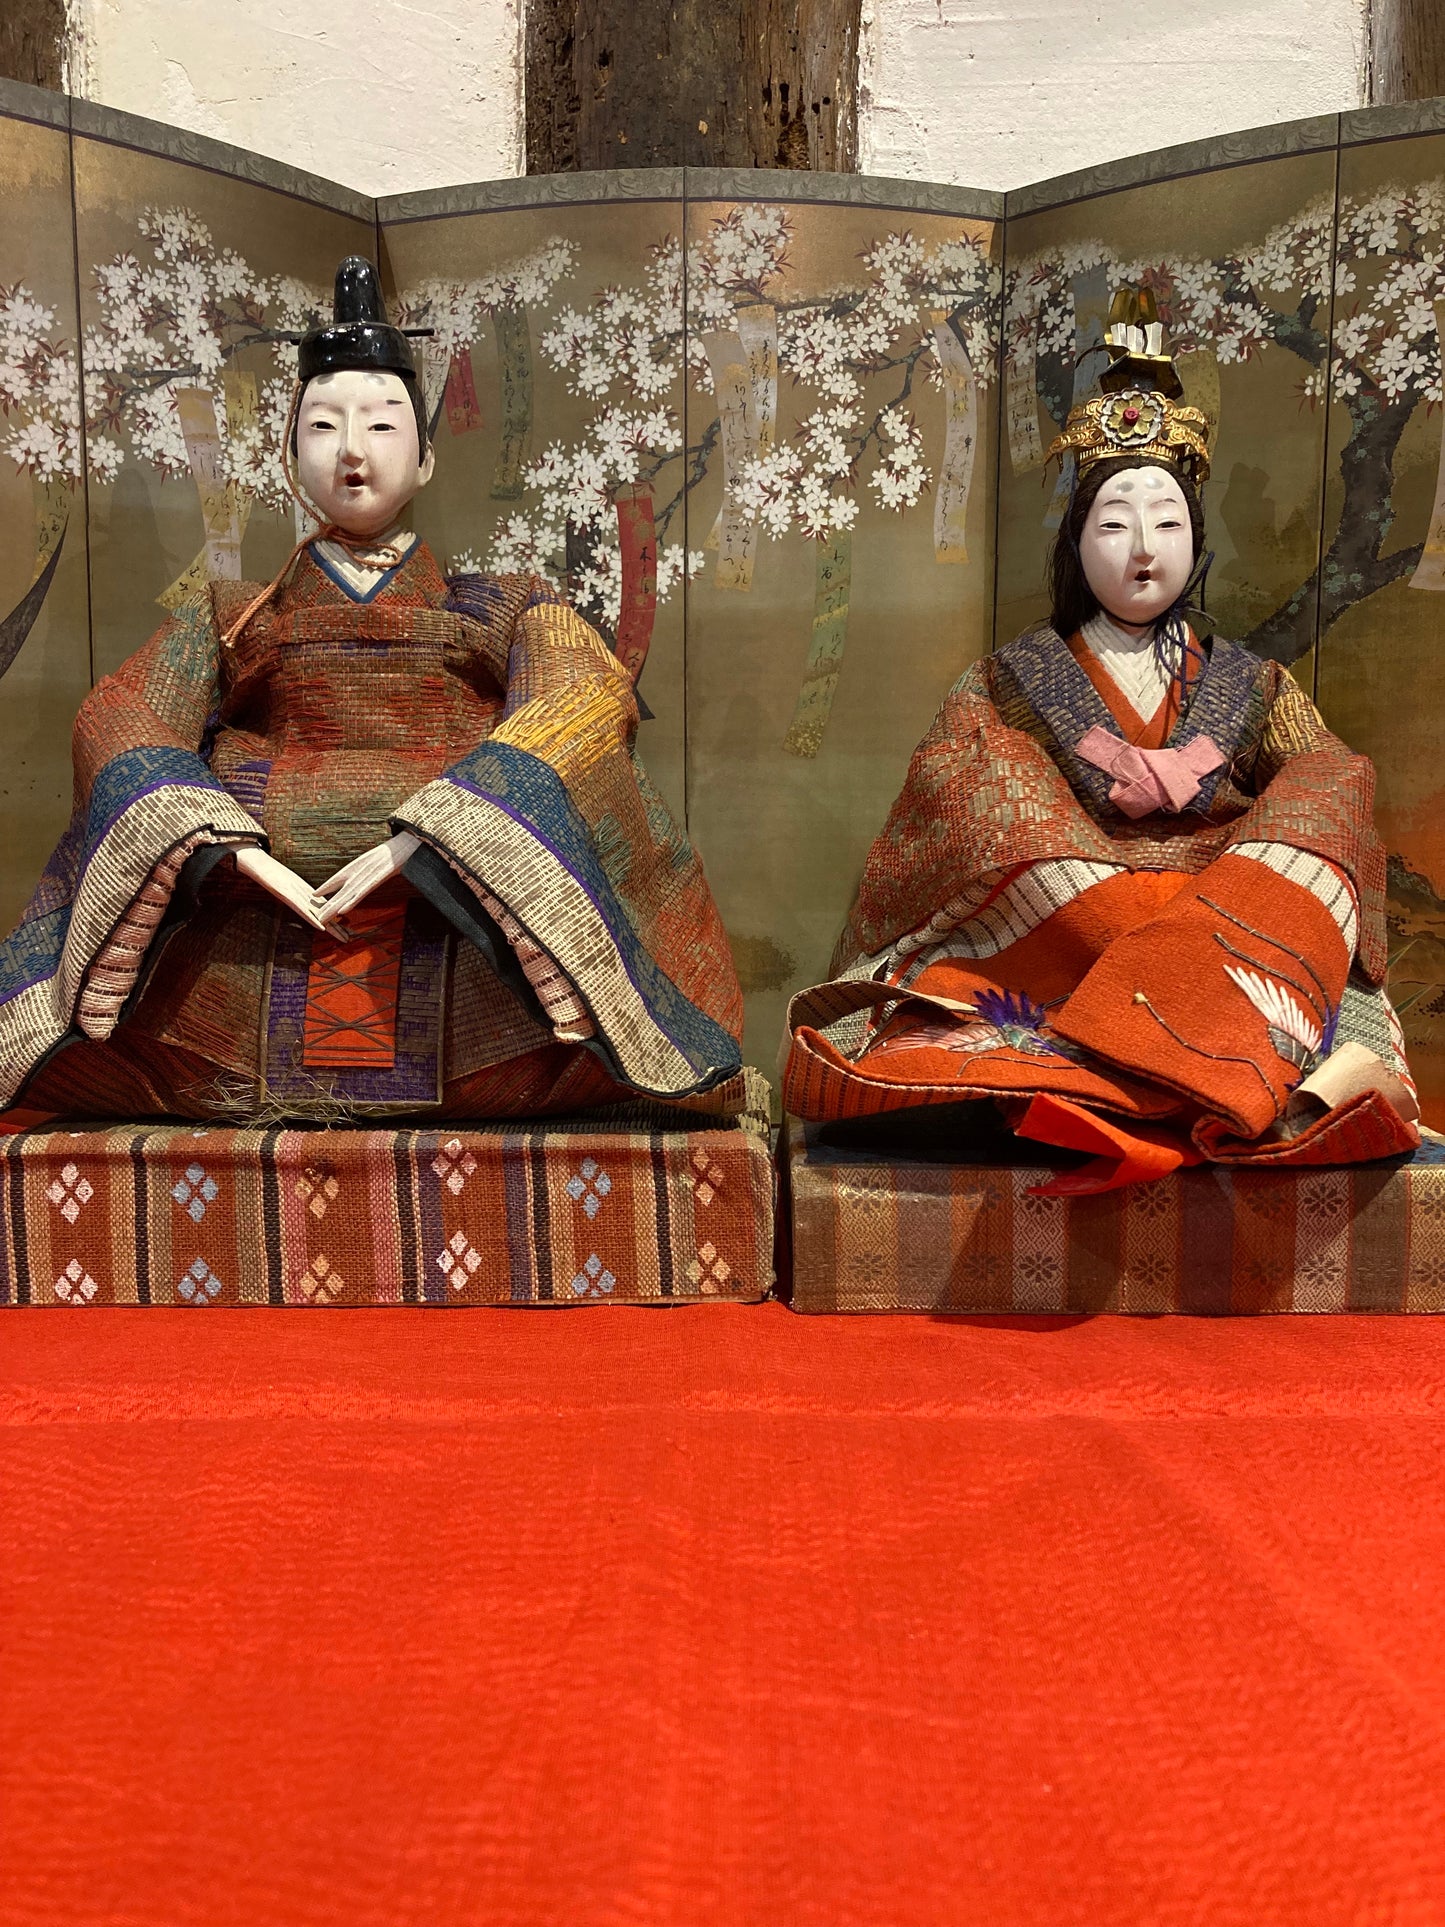 poupées japonaises pour la fête de Hina Matsuri (la fête des filles), représentant l'Empereur et l'Impératrice  sur socle